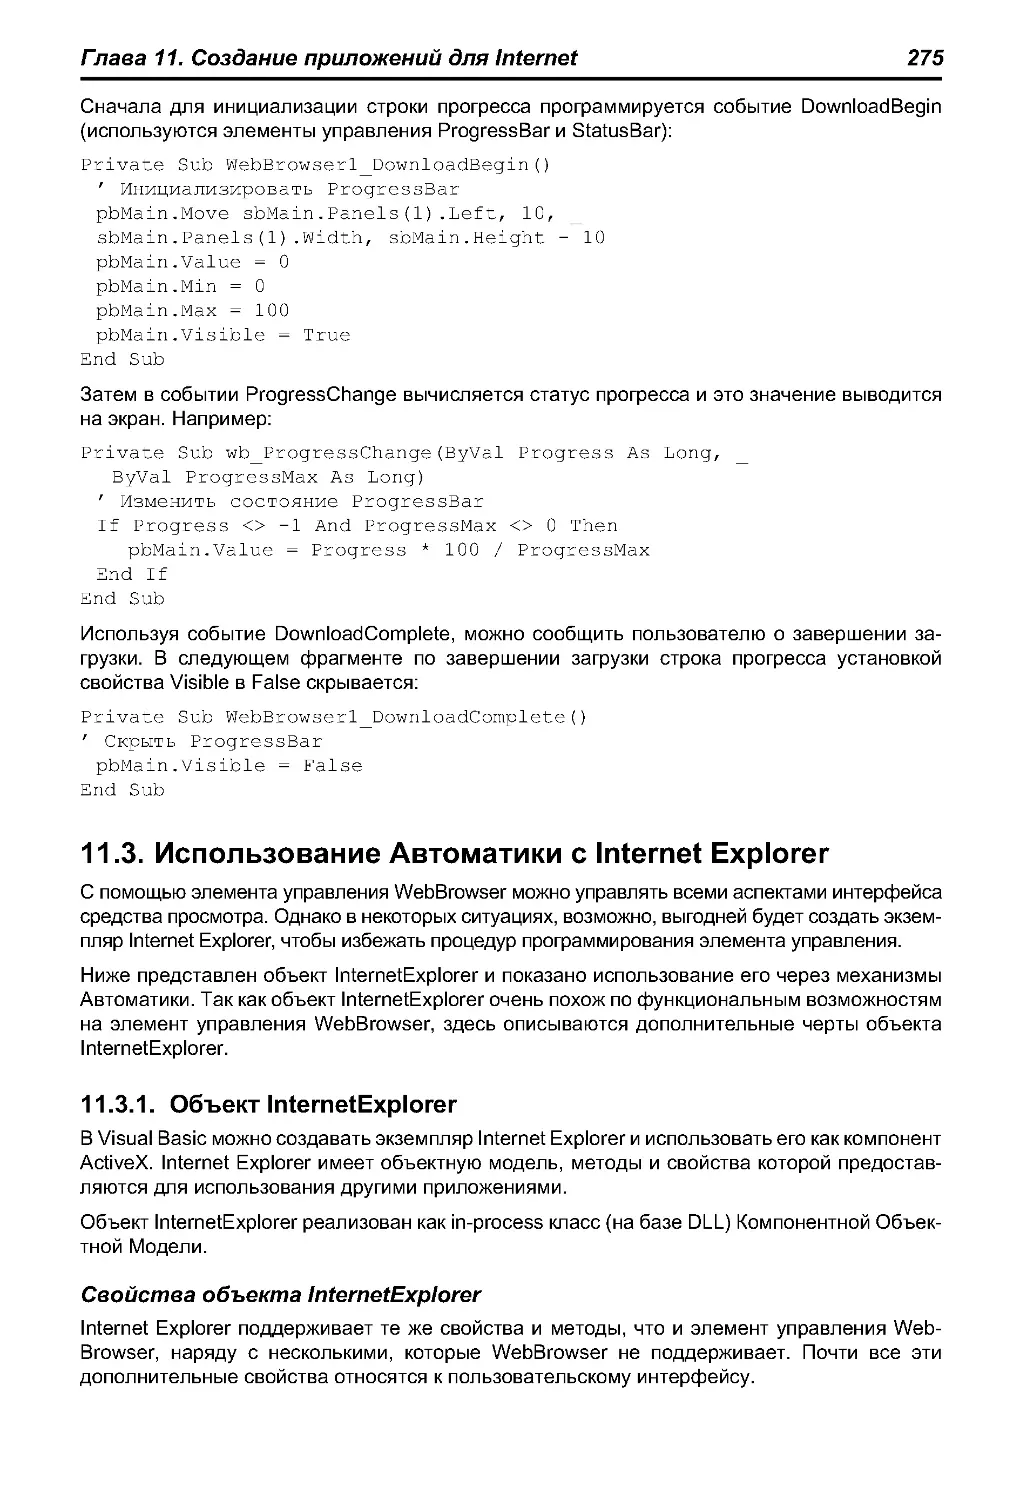 11.3. Использование Автоматики с Internet Explorer